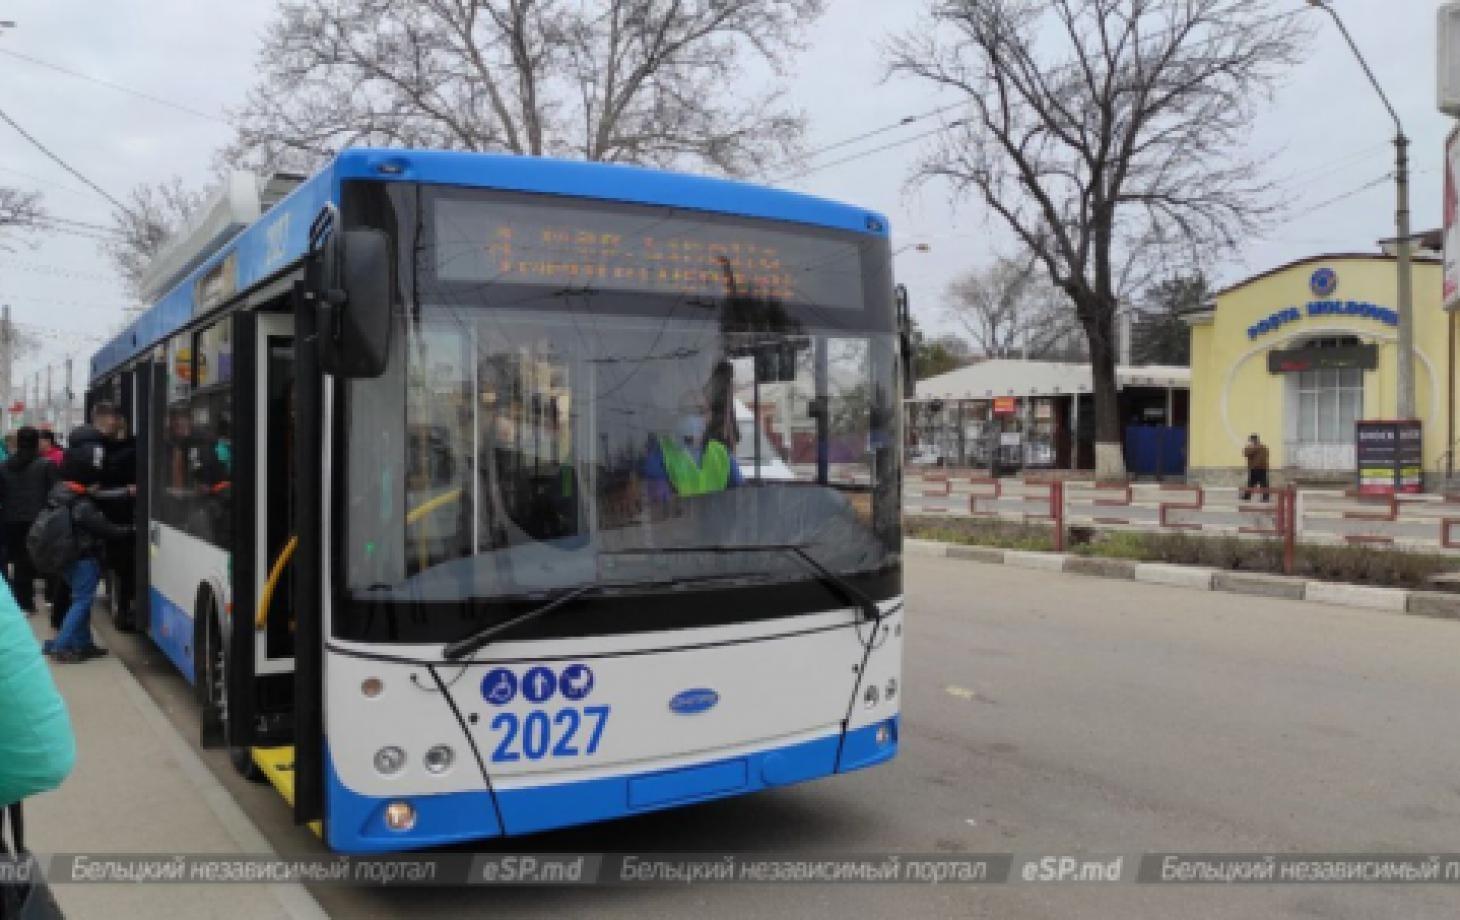 из-за резкого торможения пострадали пассажиры троллейбуса